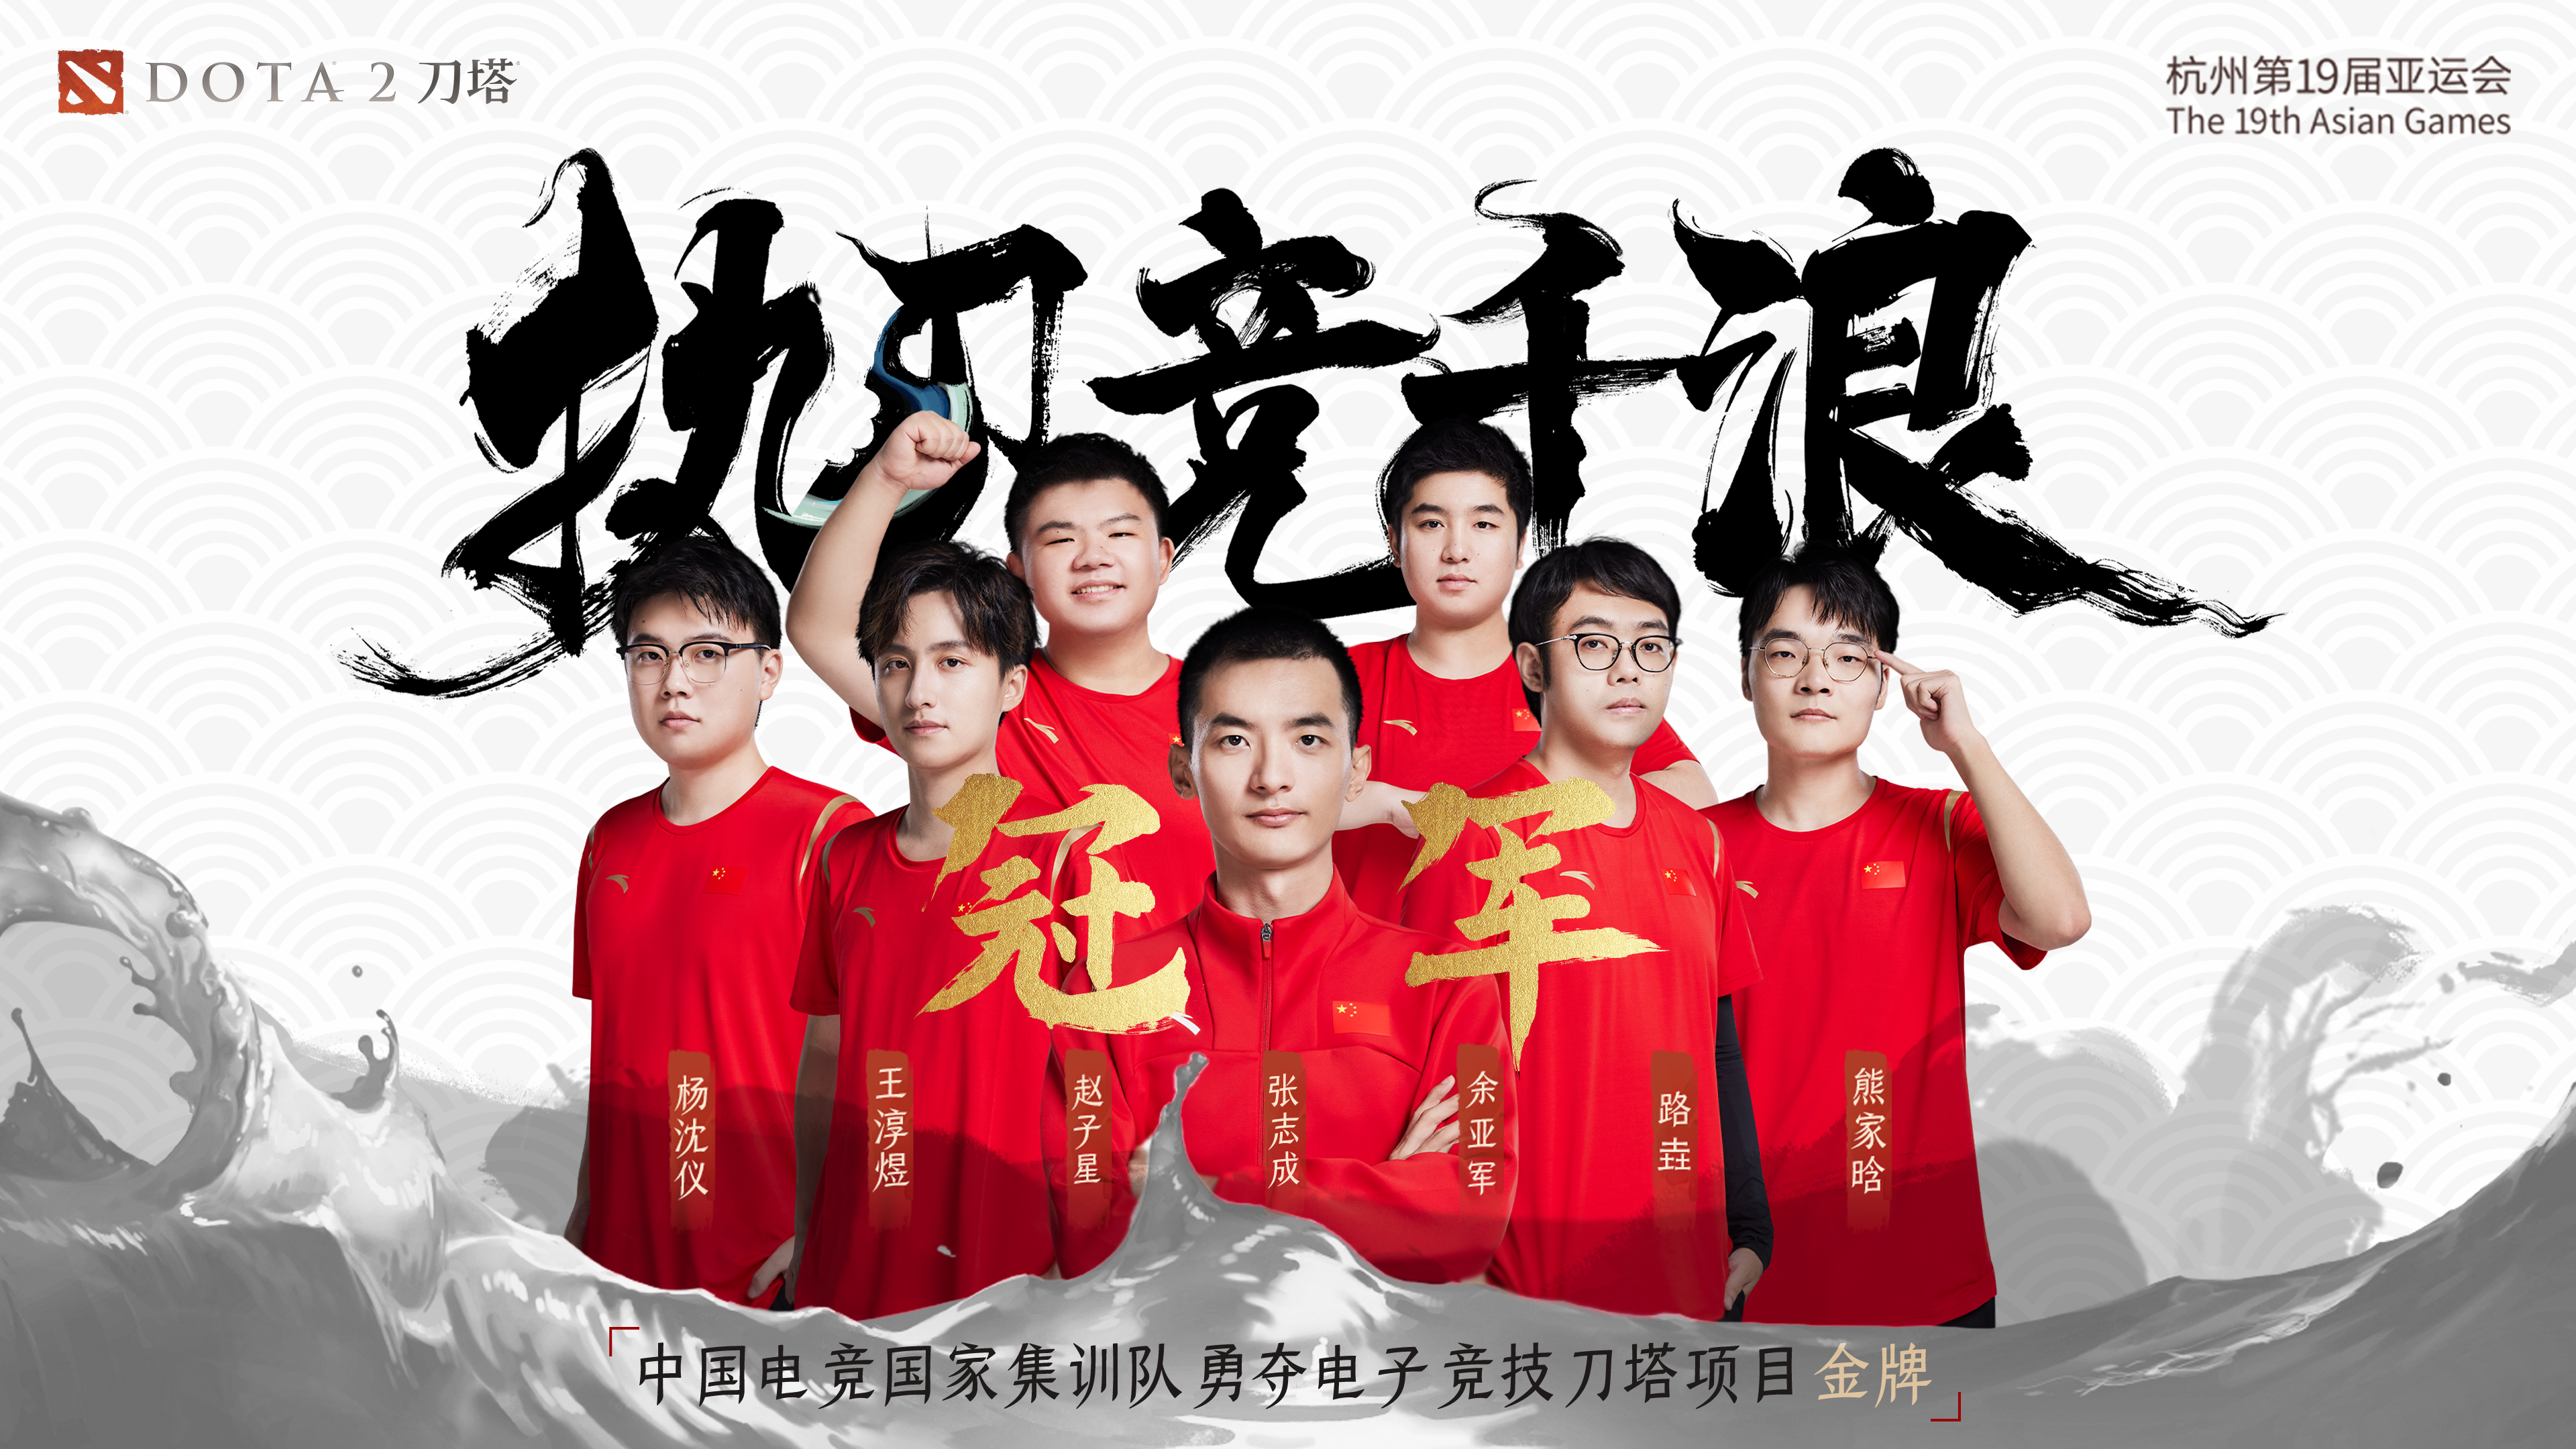 杭州第19届亚运会刀塔项目中国代表队夺得金牌